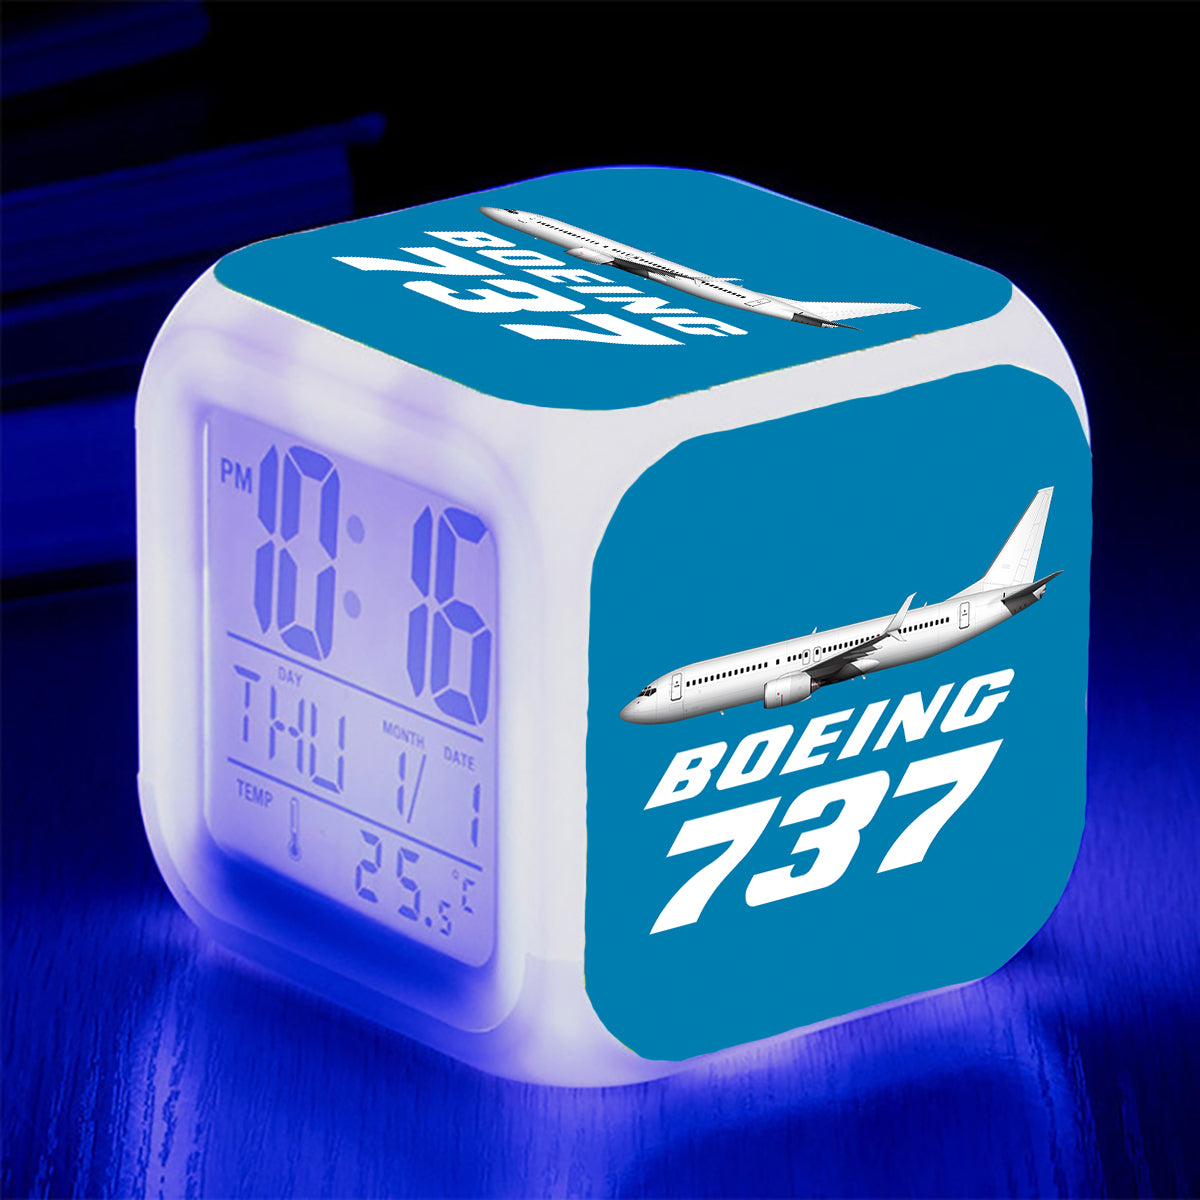 The Boeing 737 Designed "7 Colour" Digital Alarm Clock